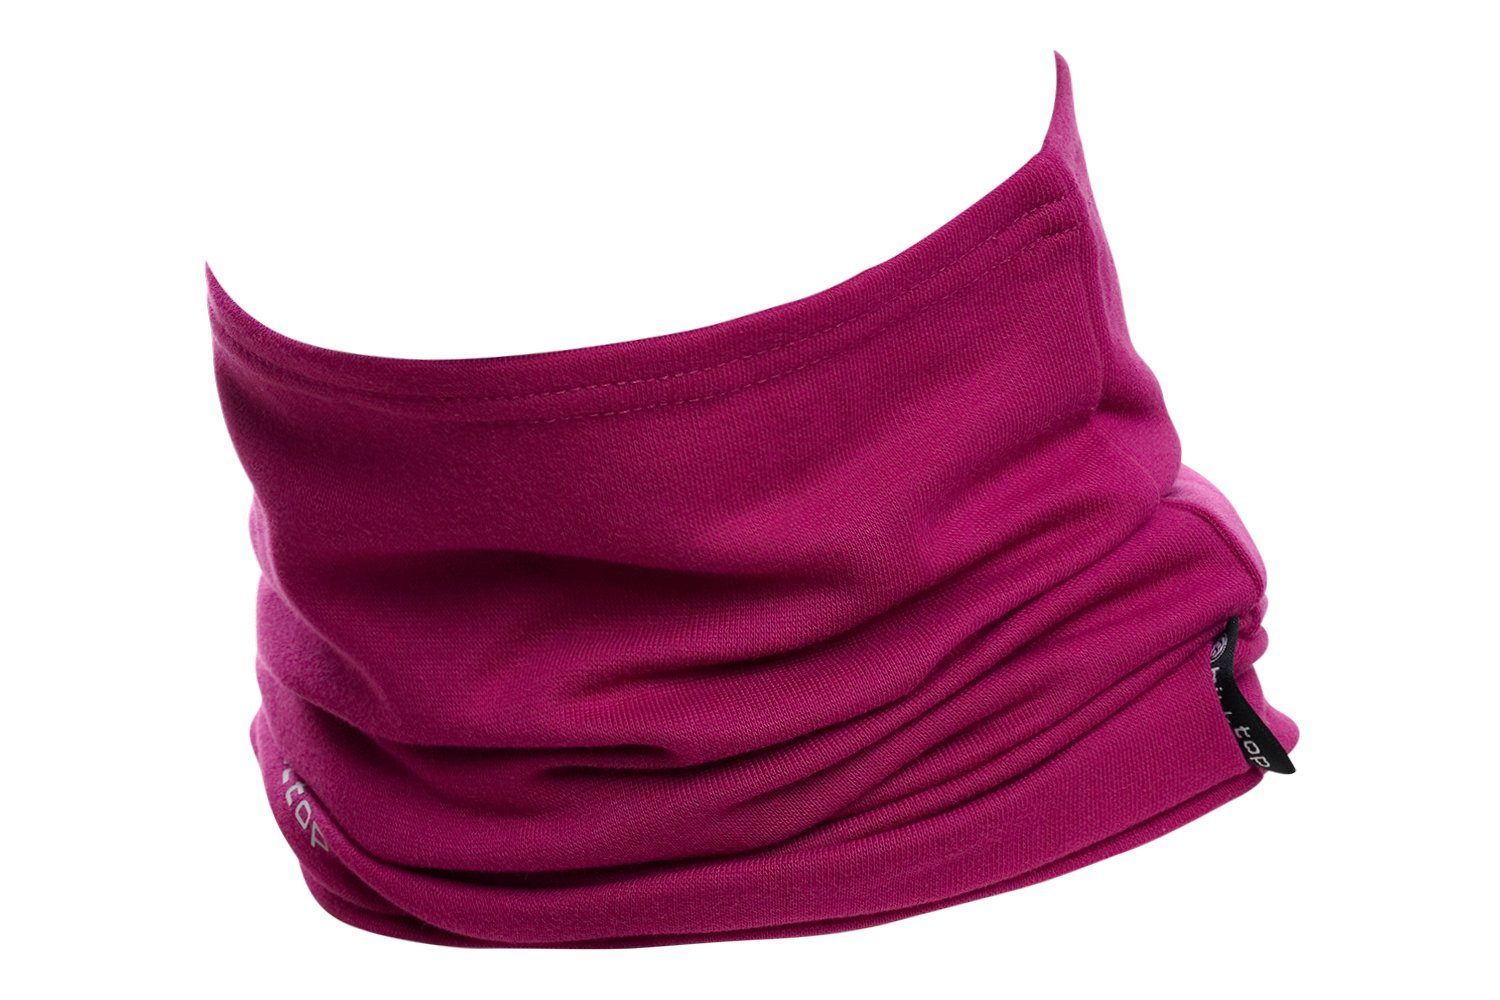 Schlauchtuch, Baumwolle - Hilltop Motorradtuch Bandana, Multifunktionstuch Pink Schal Halstuch,